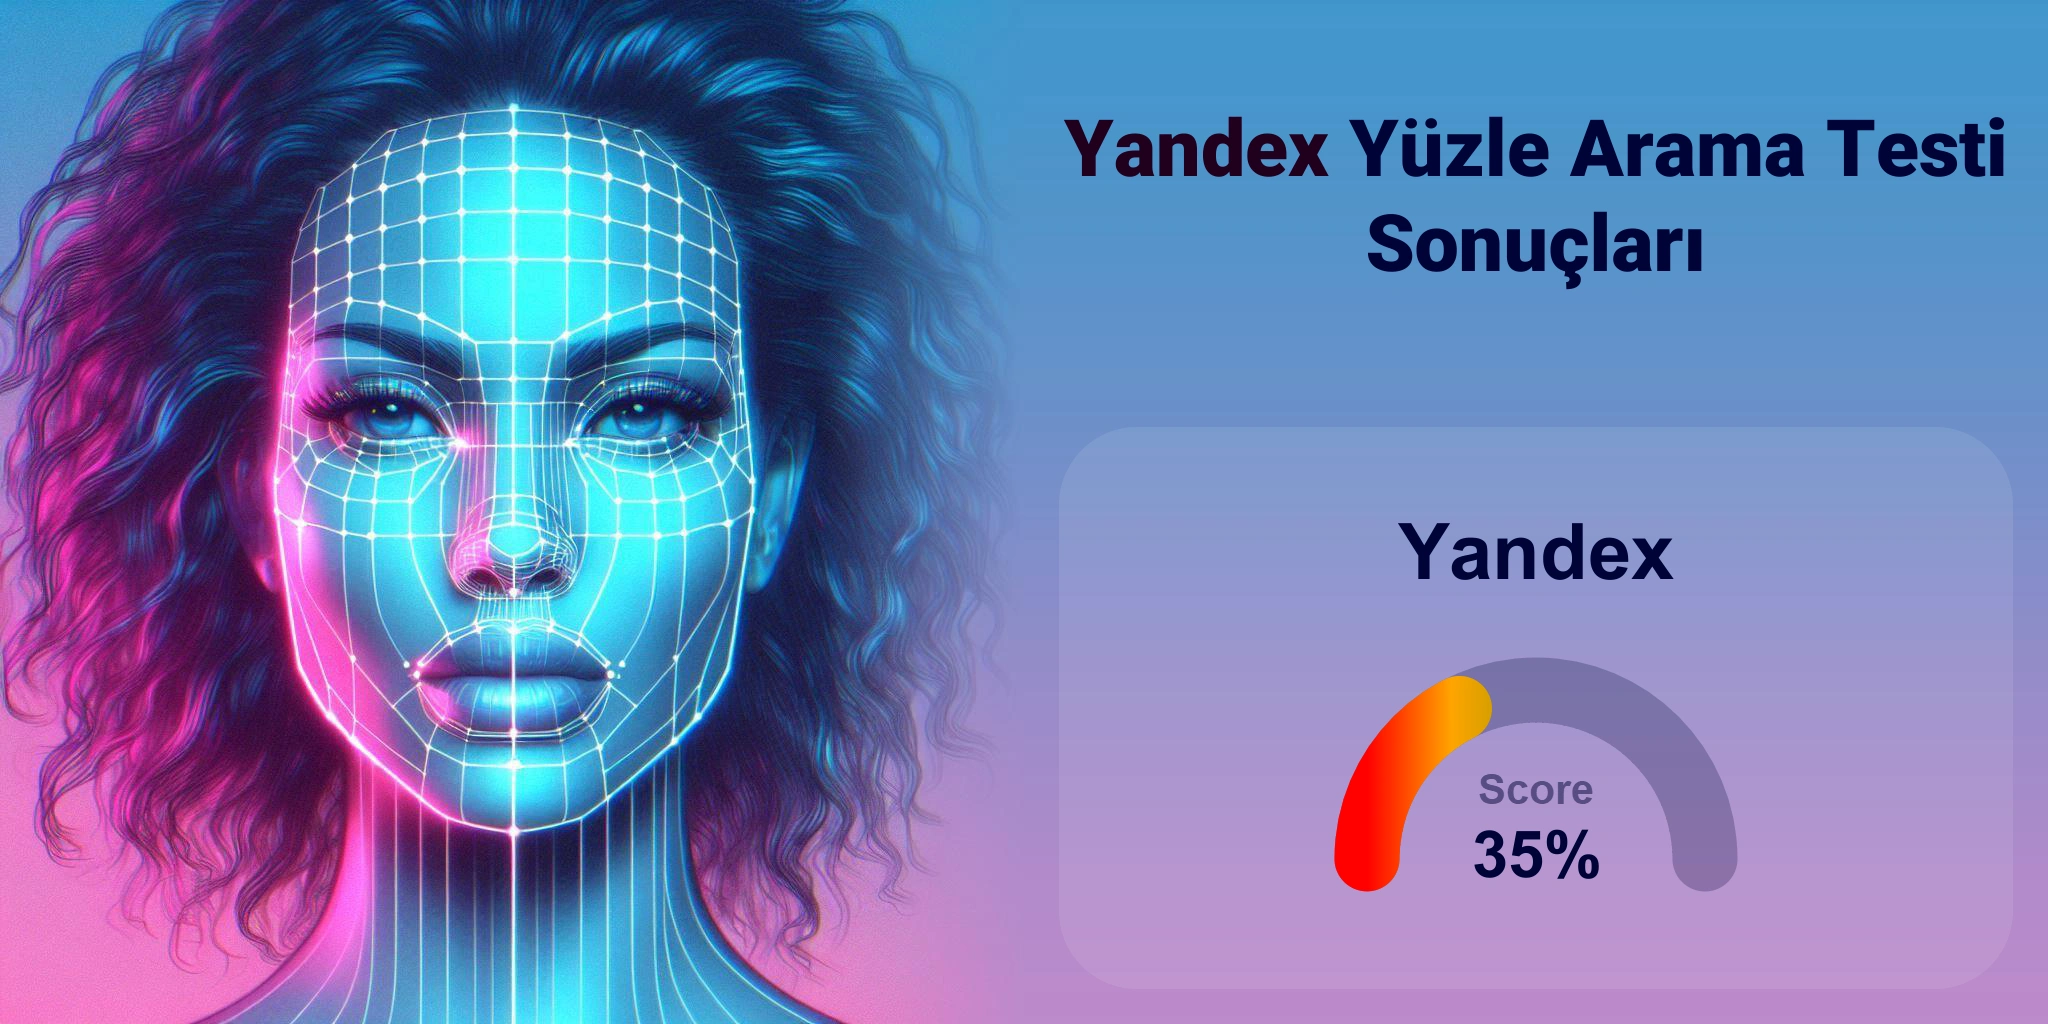 Yandex Yüz Araması için En İyi mi?